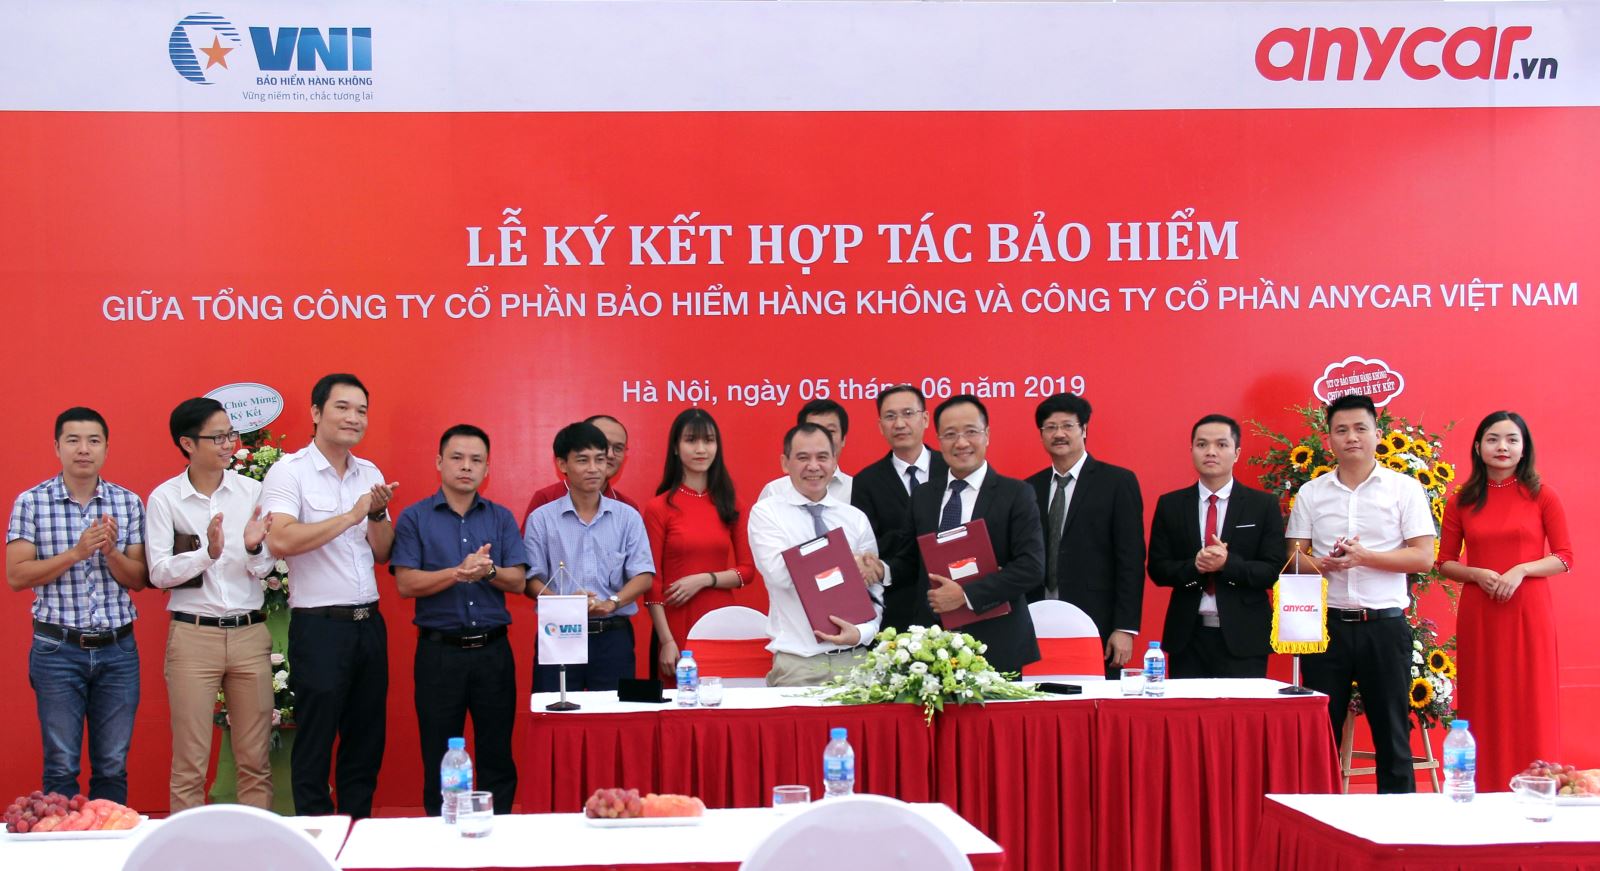 VNI & Anycar Việt Nam ký hợp tác bảo hiểm  2